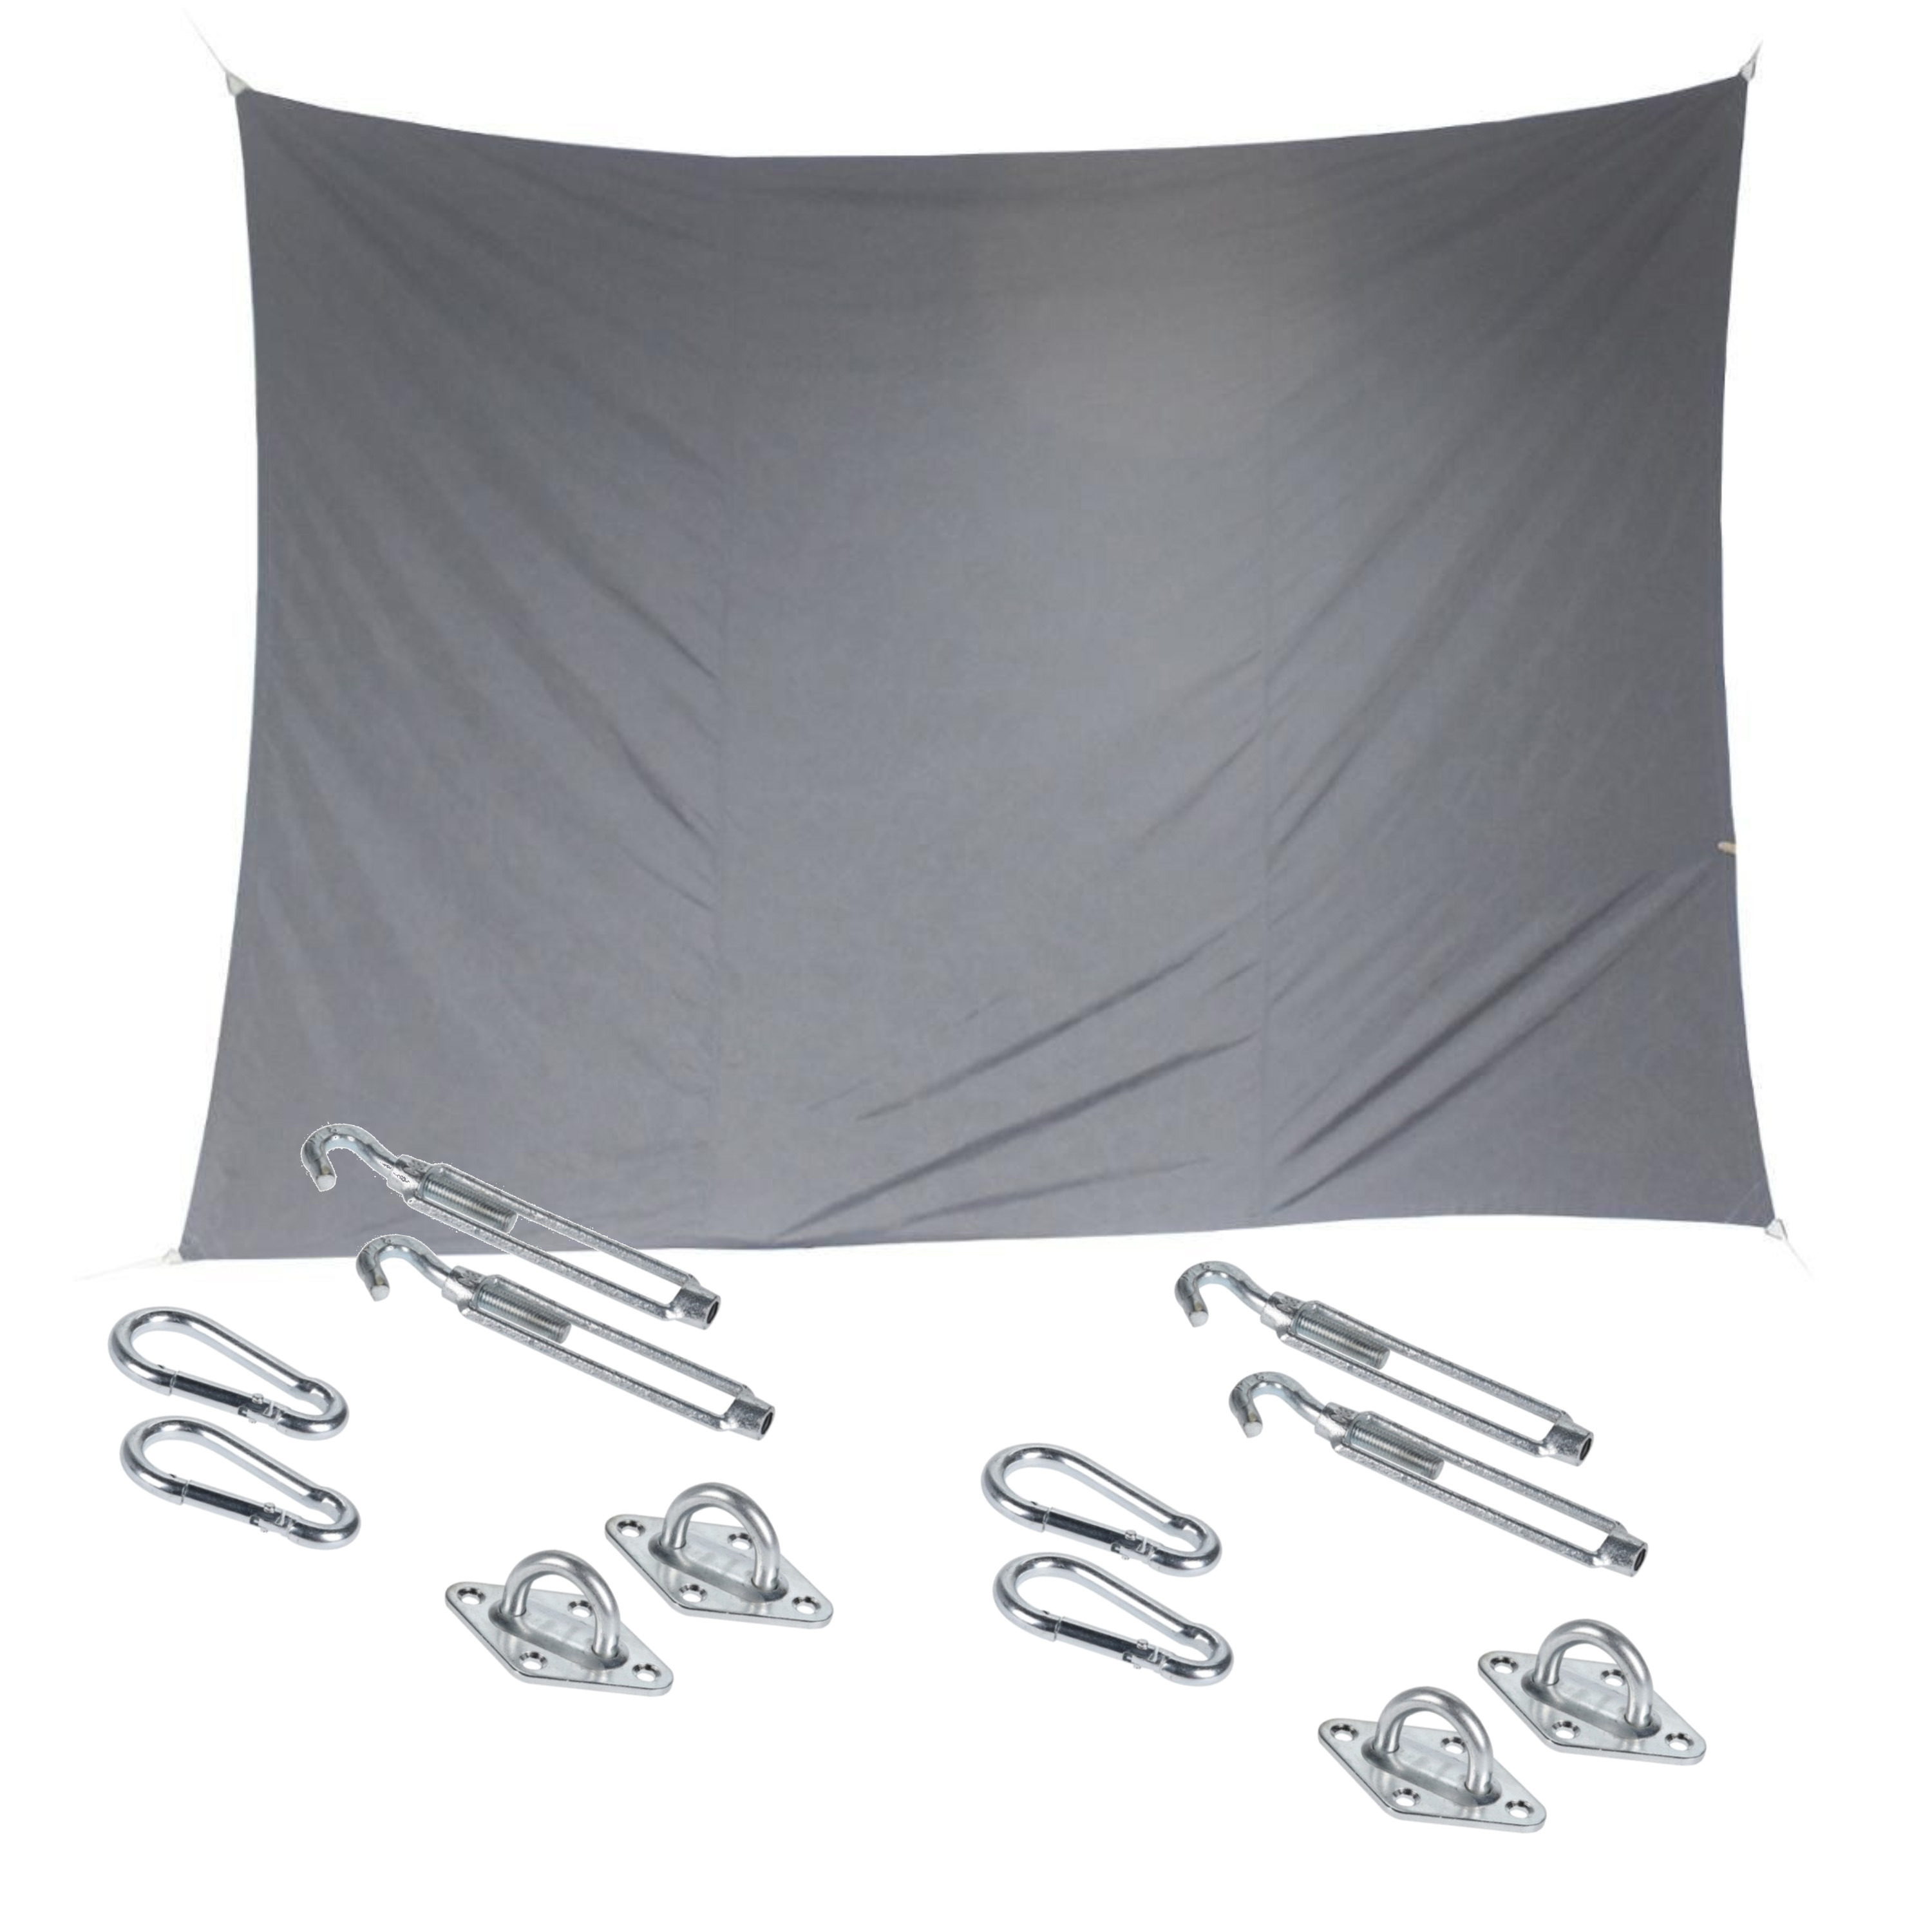 Premium kwaliteit schaduwdoek-zonnescherm Shae rechthoekig grijs 3 x 4 meter met ophanghaken